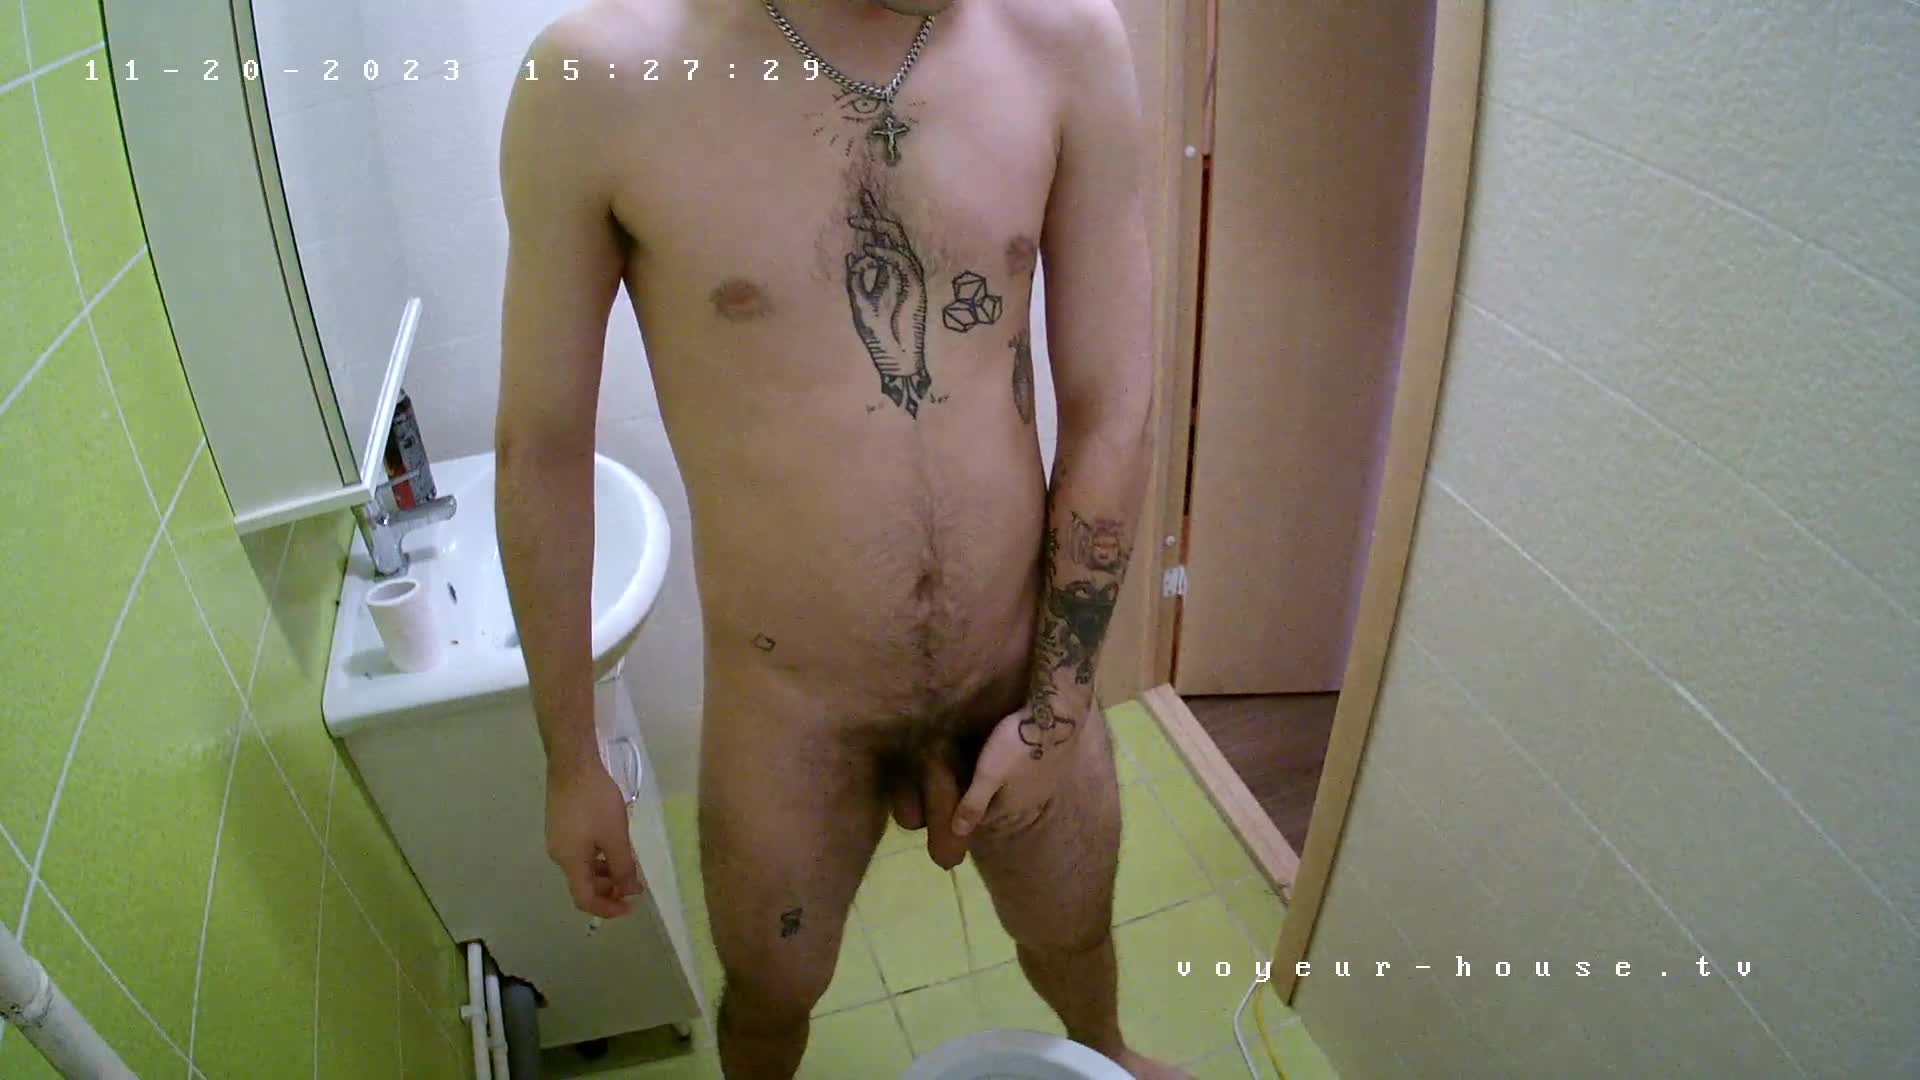 Artem peeing naked 20 Nov 2023